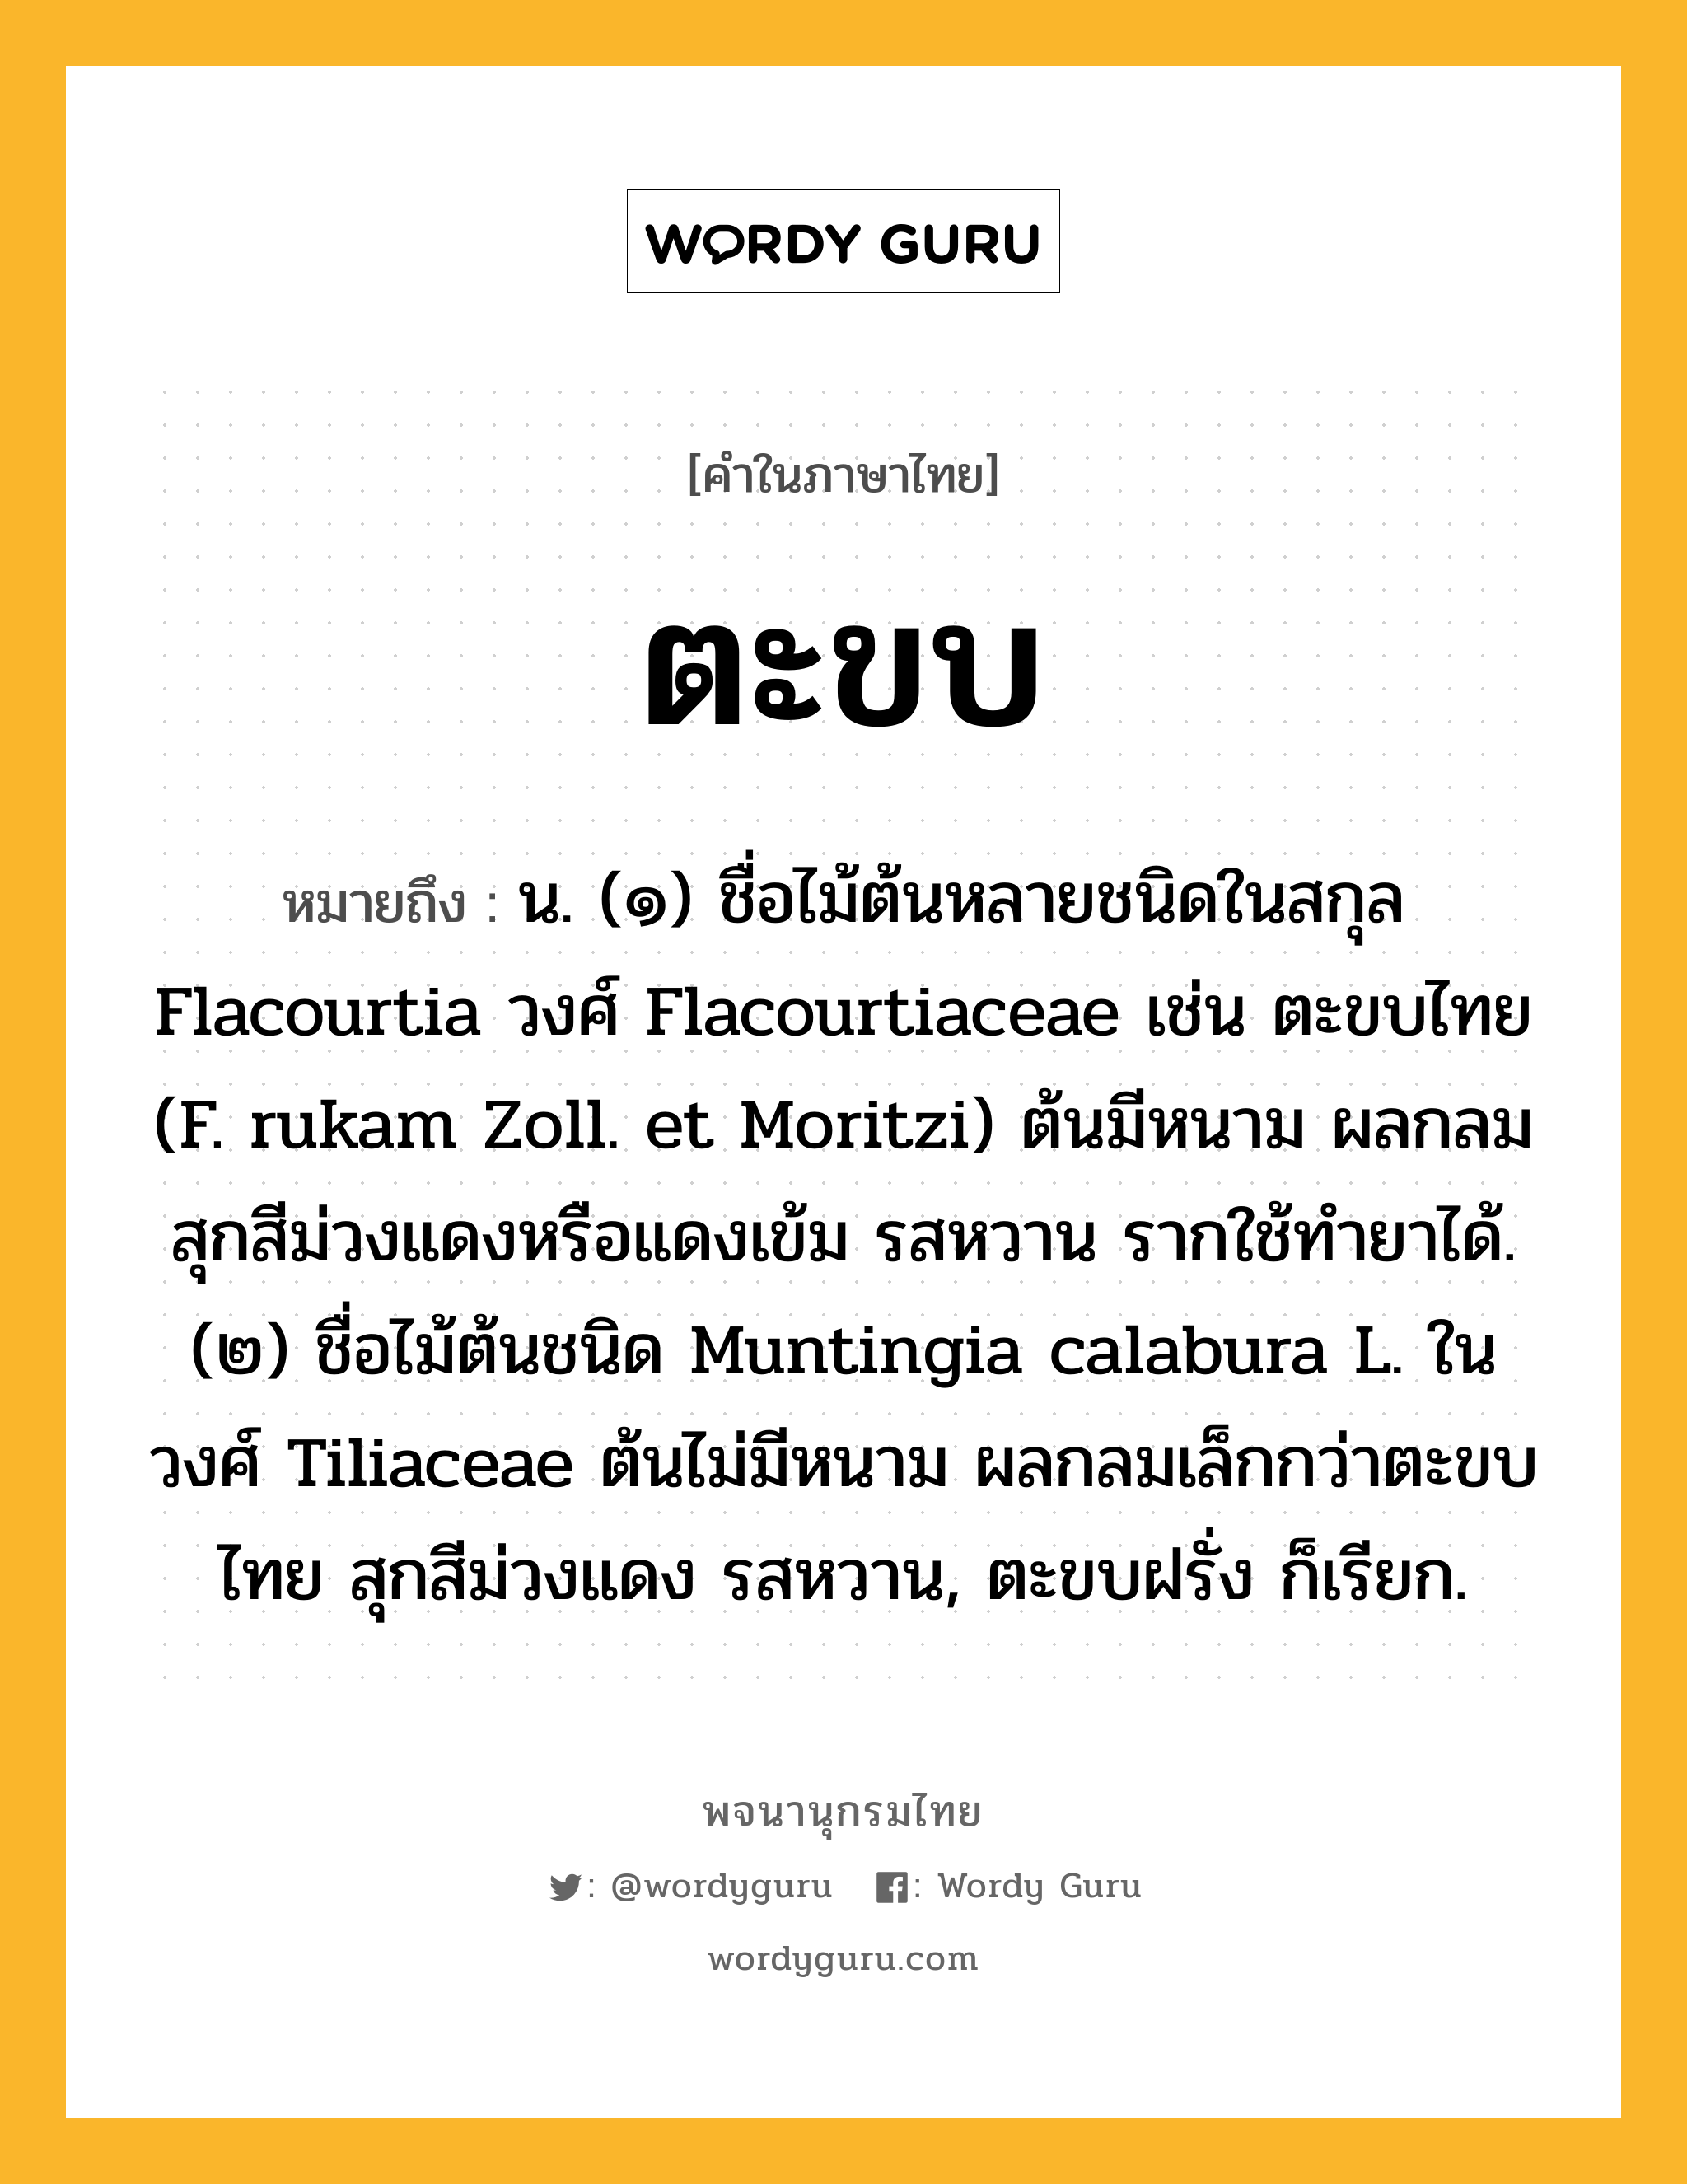 ตะขบ หมายถึงอะไร?, คำในภาษาไทย ตะขบ หมายถึง น. (๑) ชื่อไม้ต้นหลายชนิดในสกุล Flacourtia วงศ์ Flacourtiaceae เช่น ตะขบไทย (F. rukam Zoll. et Moritzi) ต้นมีหนาม ผลกลม สุกสีม่วงแดงหรือแดงเข้ม รสหวาน รากใช้ทํายาได้. (๒) ชื่อไม้ต้นชนิด Muntingia calabura L. ในวงศ์ Tiliaceae ต้นไม่มีหนาม ผลกลมเล็กกว่าตะขบไทย สุกสีม่วงแดง รสหวาน, ตะขบฝรั่ง ก็เรียก.